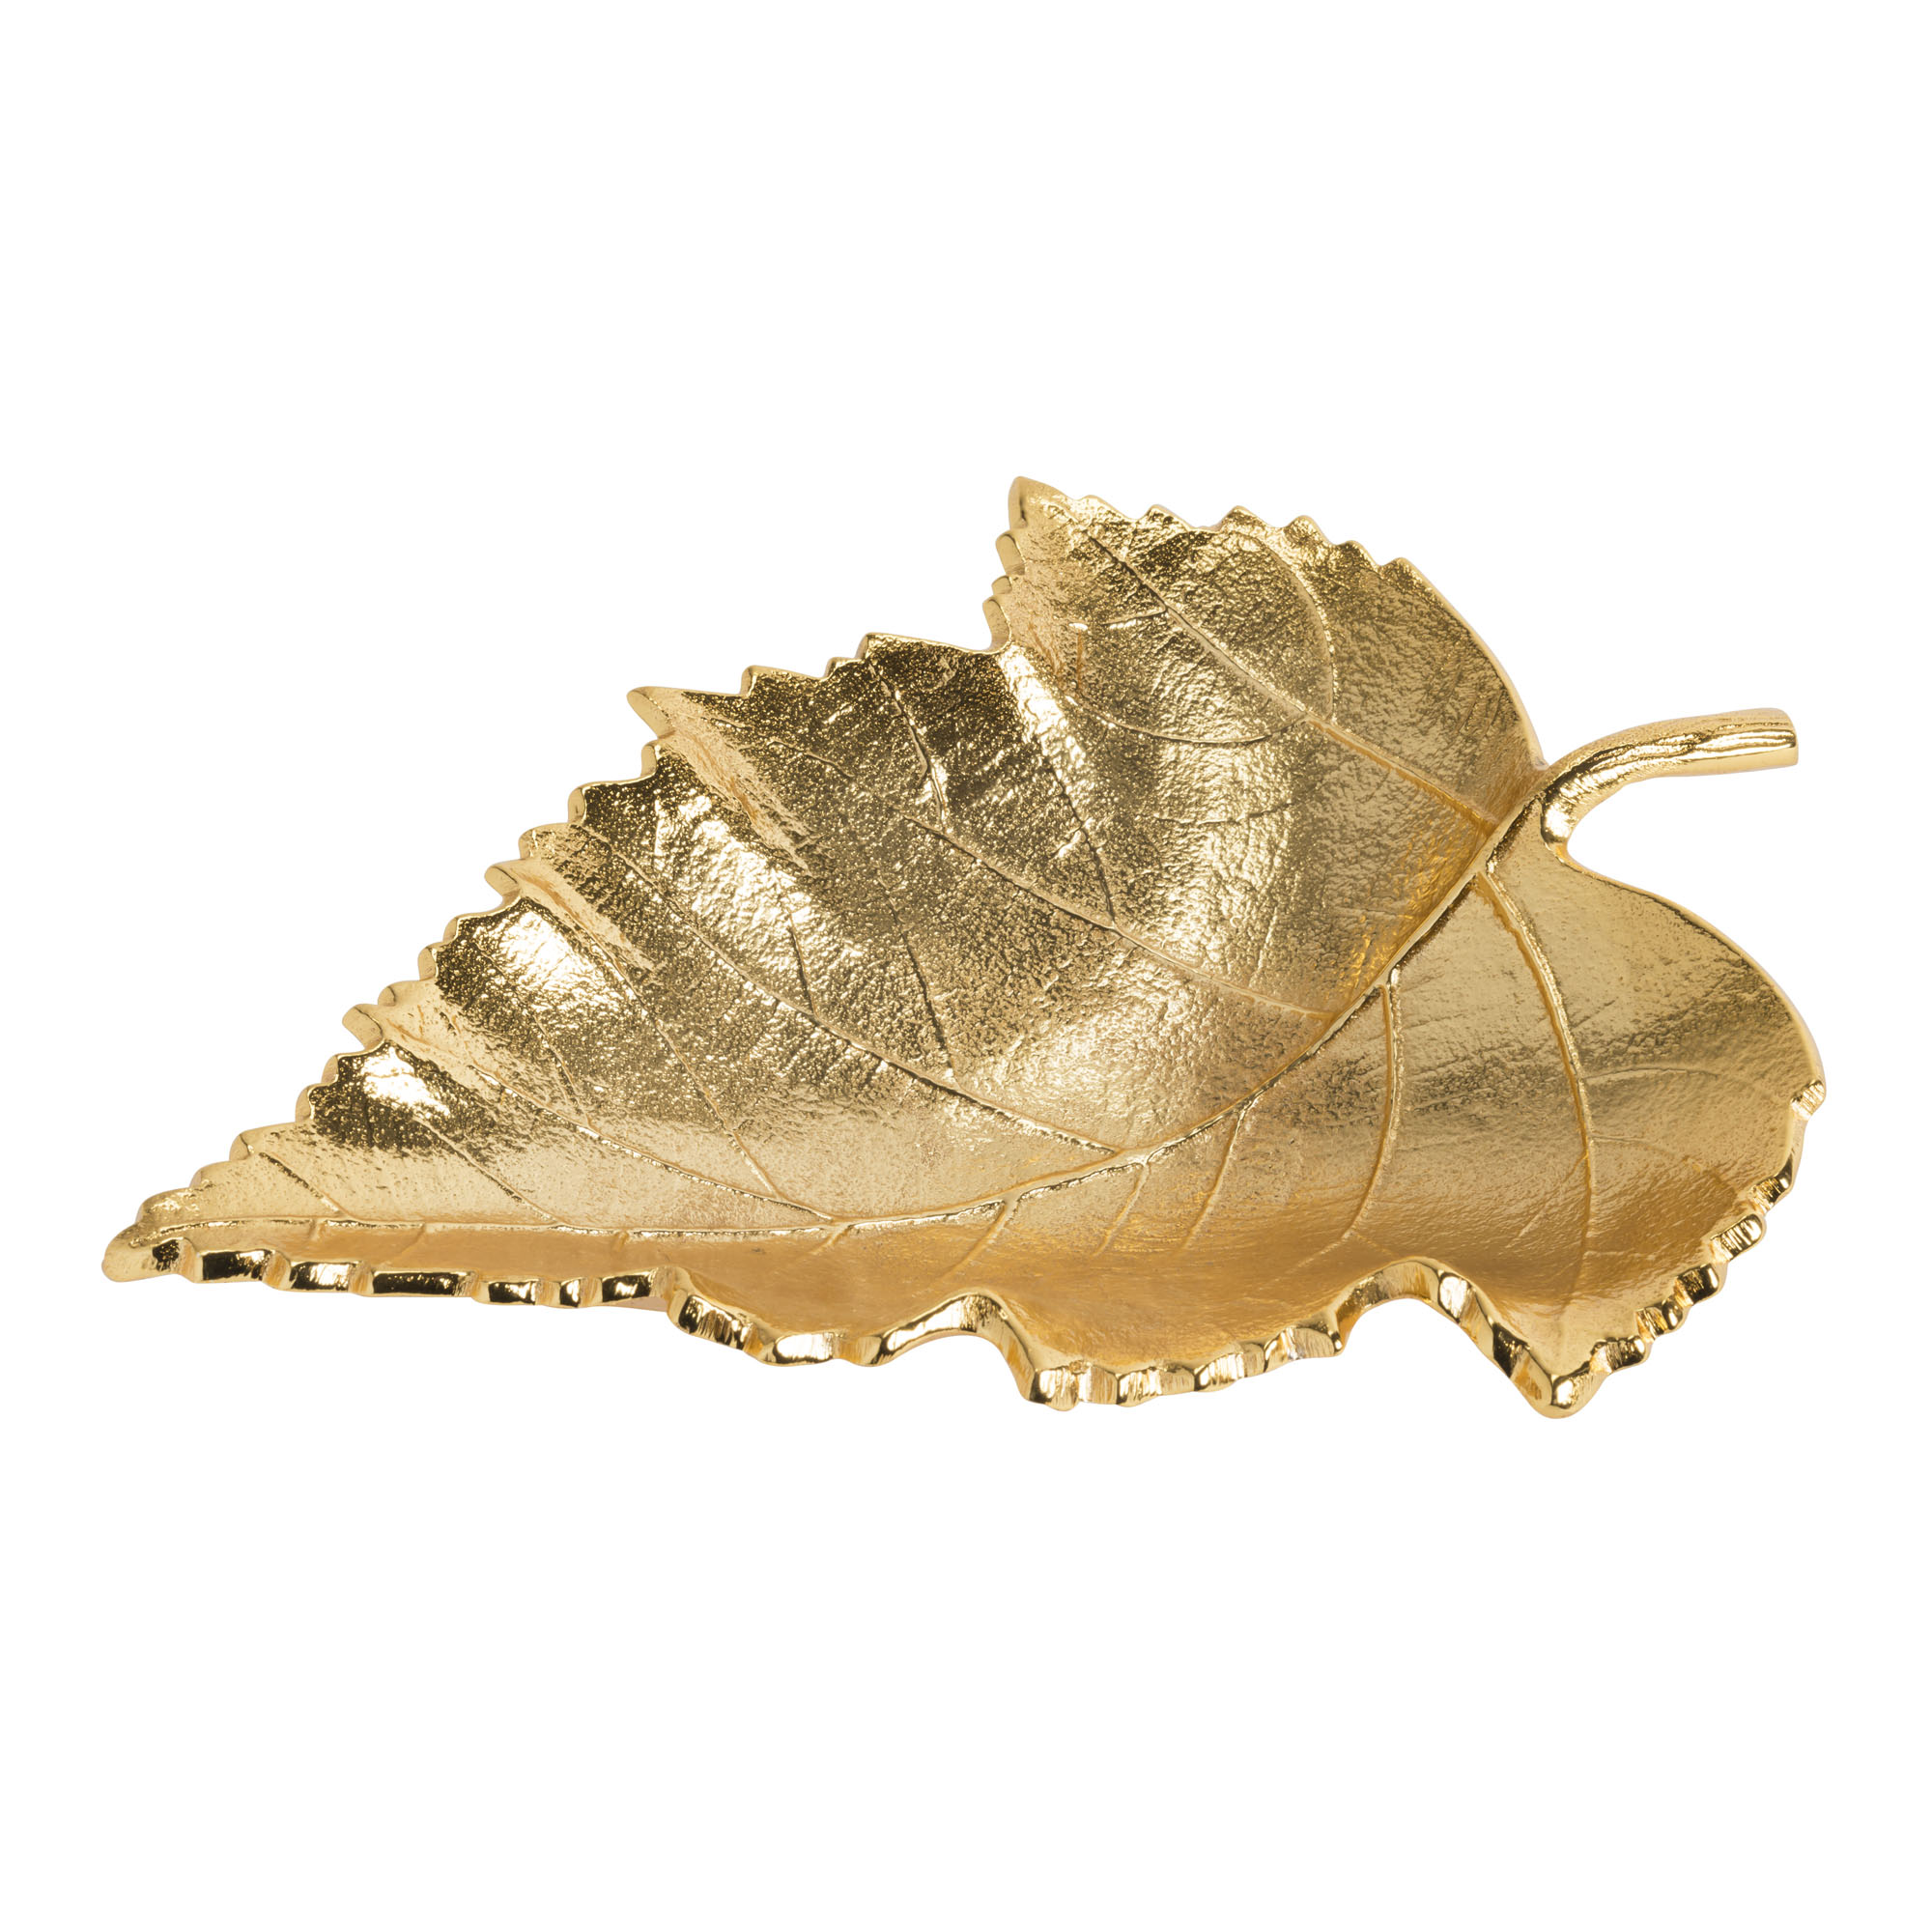 Gold maple leaf, med, 9" x 7" - Item # 6125